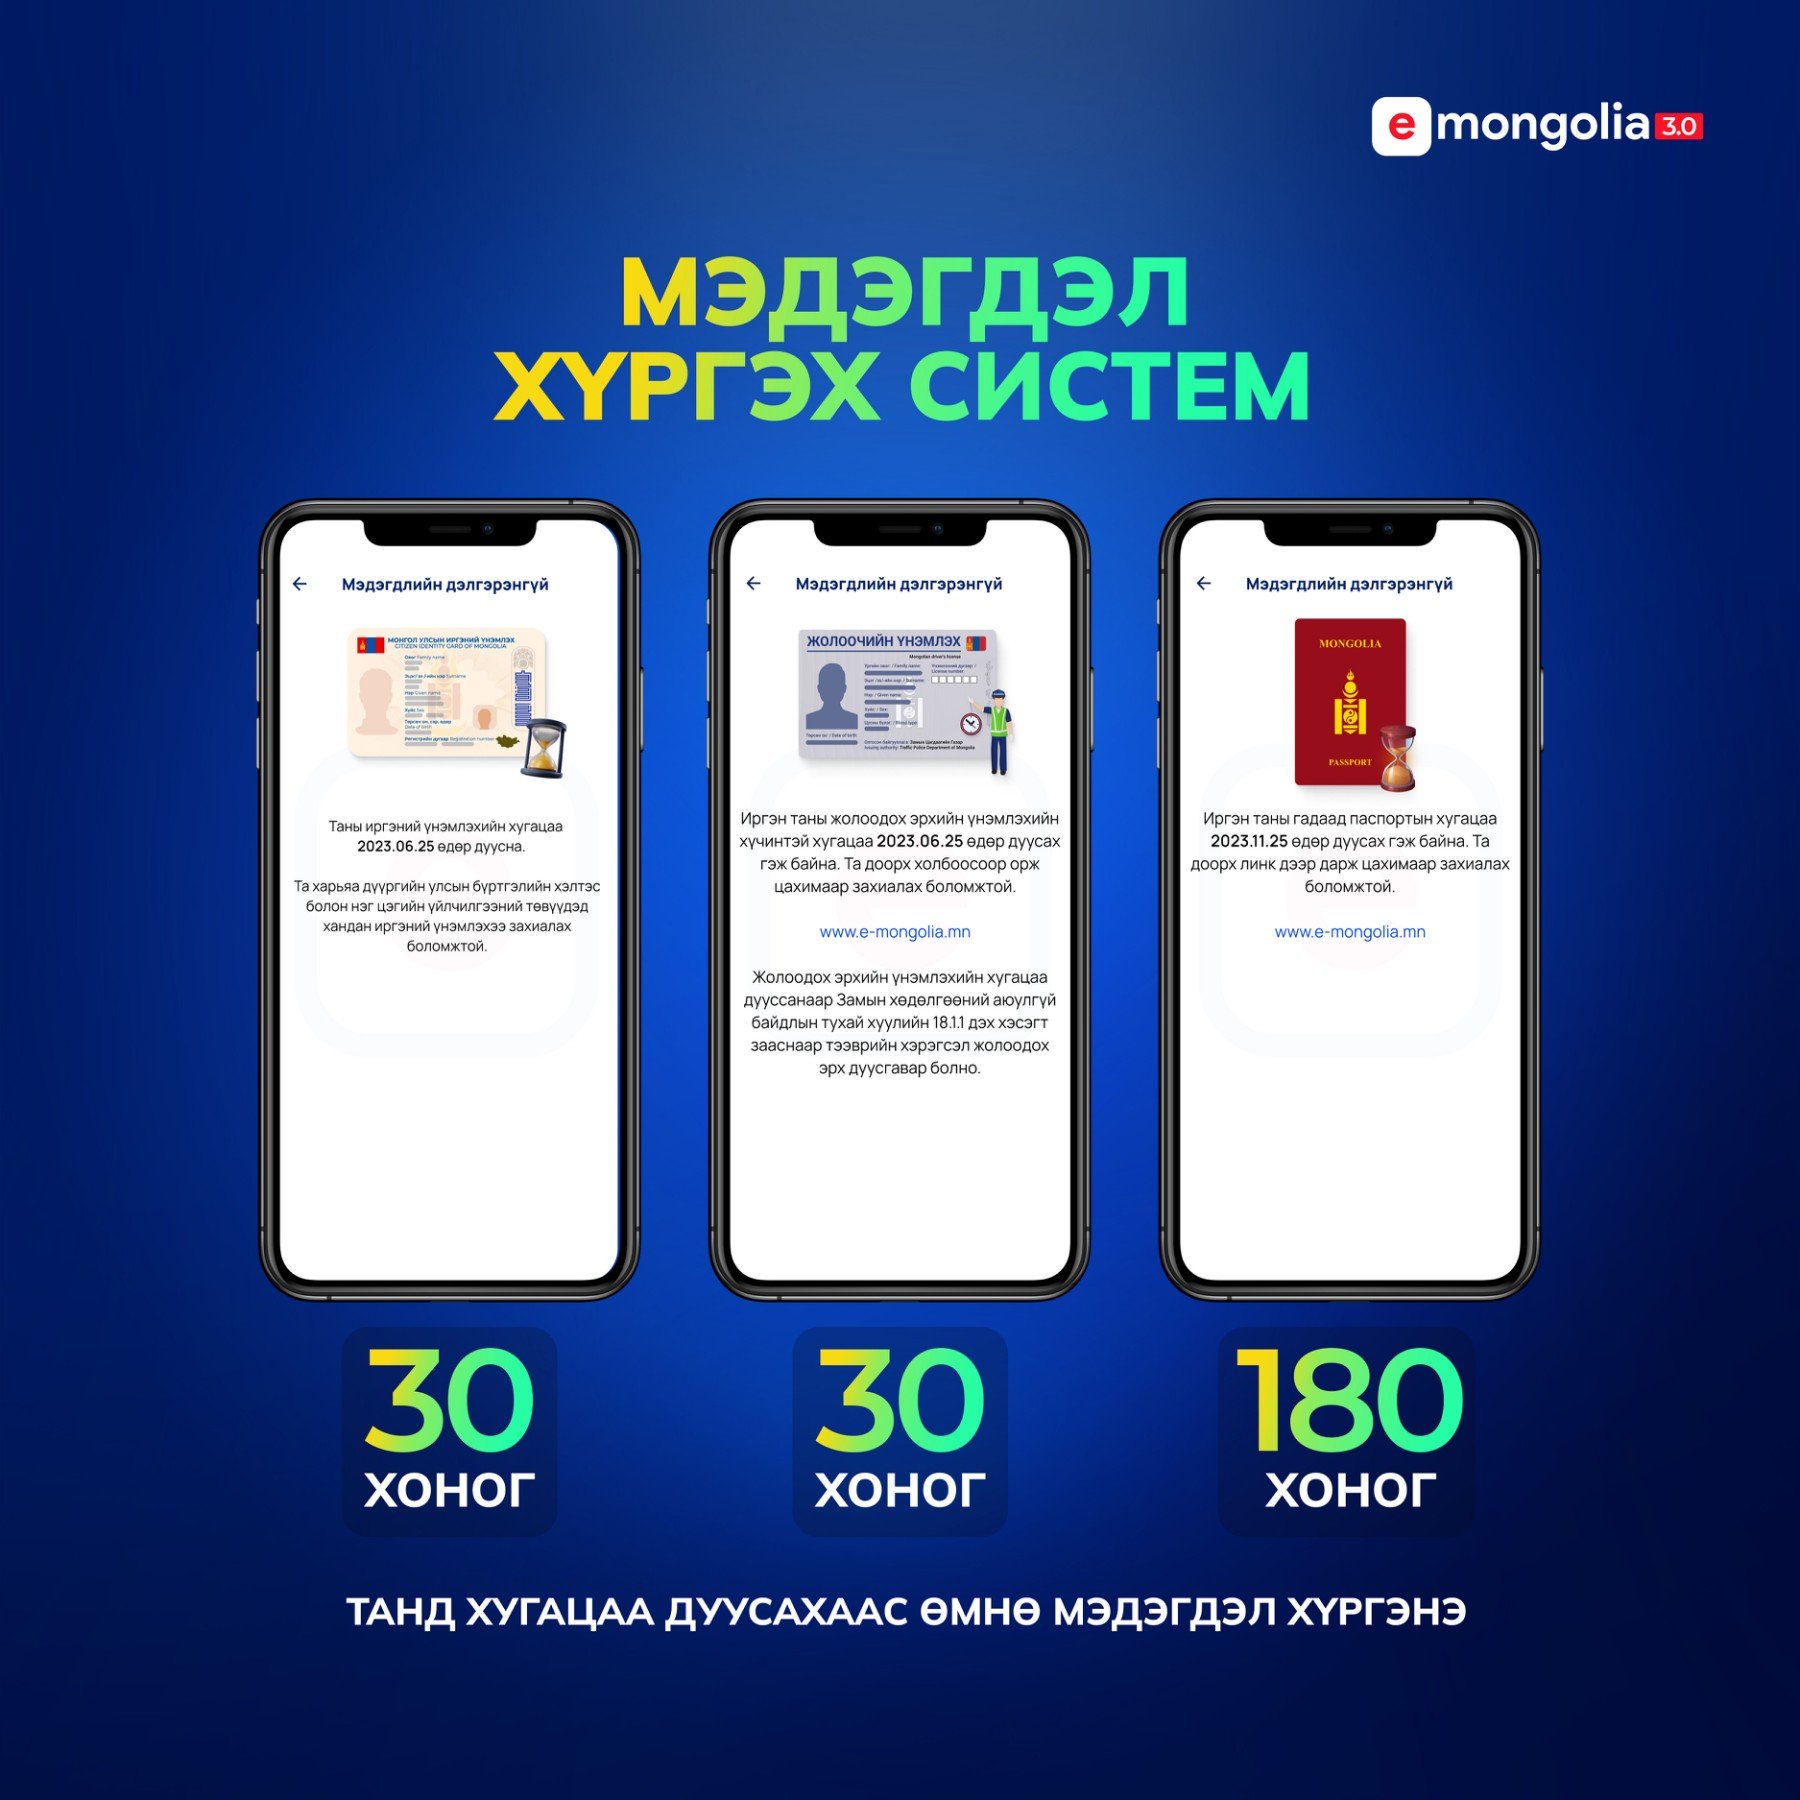  E-Mongolia 3.0 Бичиг баримтын хугацаа дуусаж байгааг мэдэгдэл хүргэх системээр дамжуулж мэдэгдэл илгээдэг боллоо.